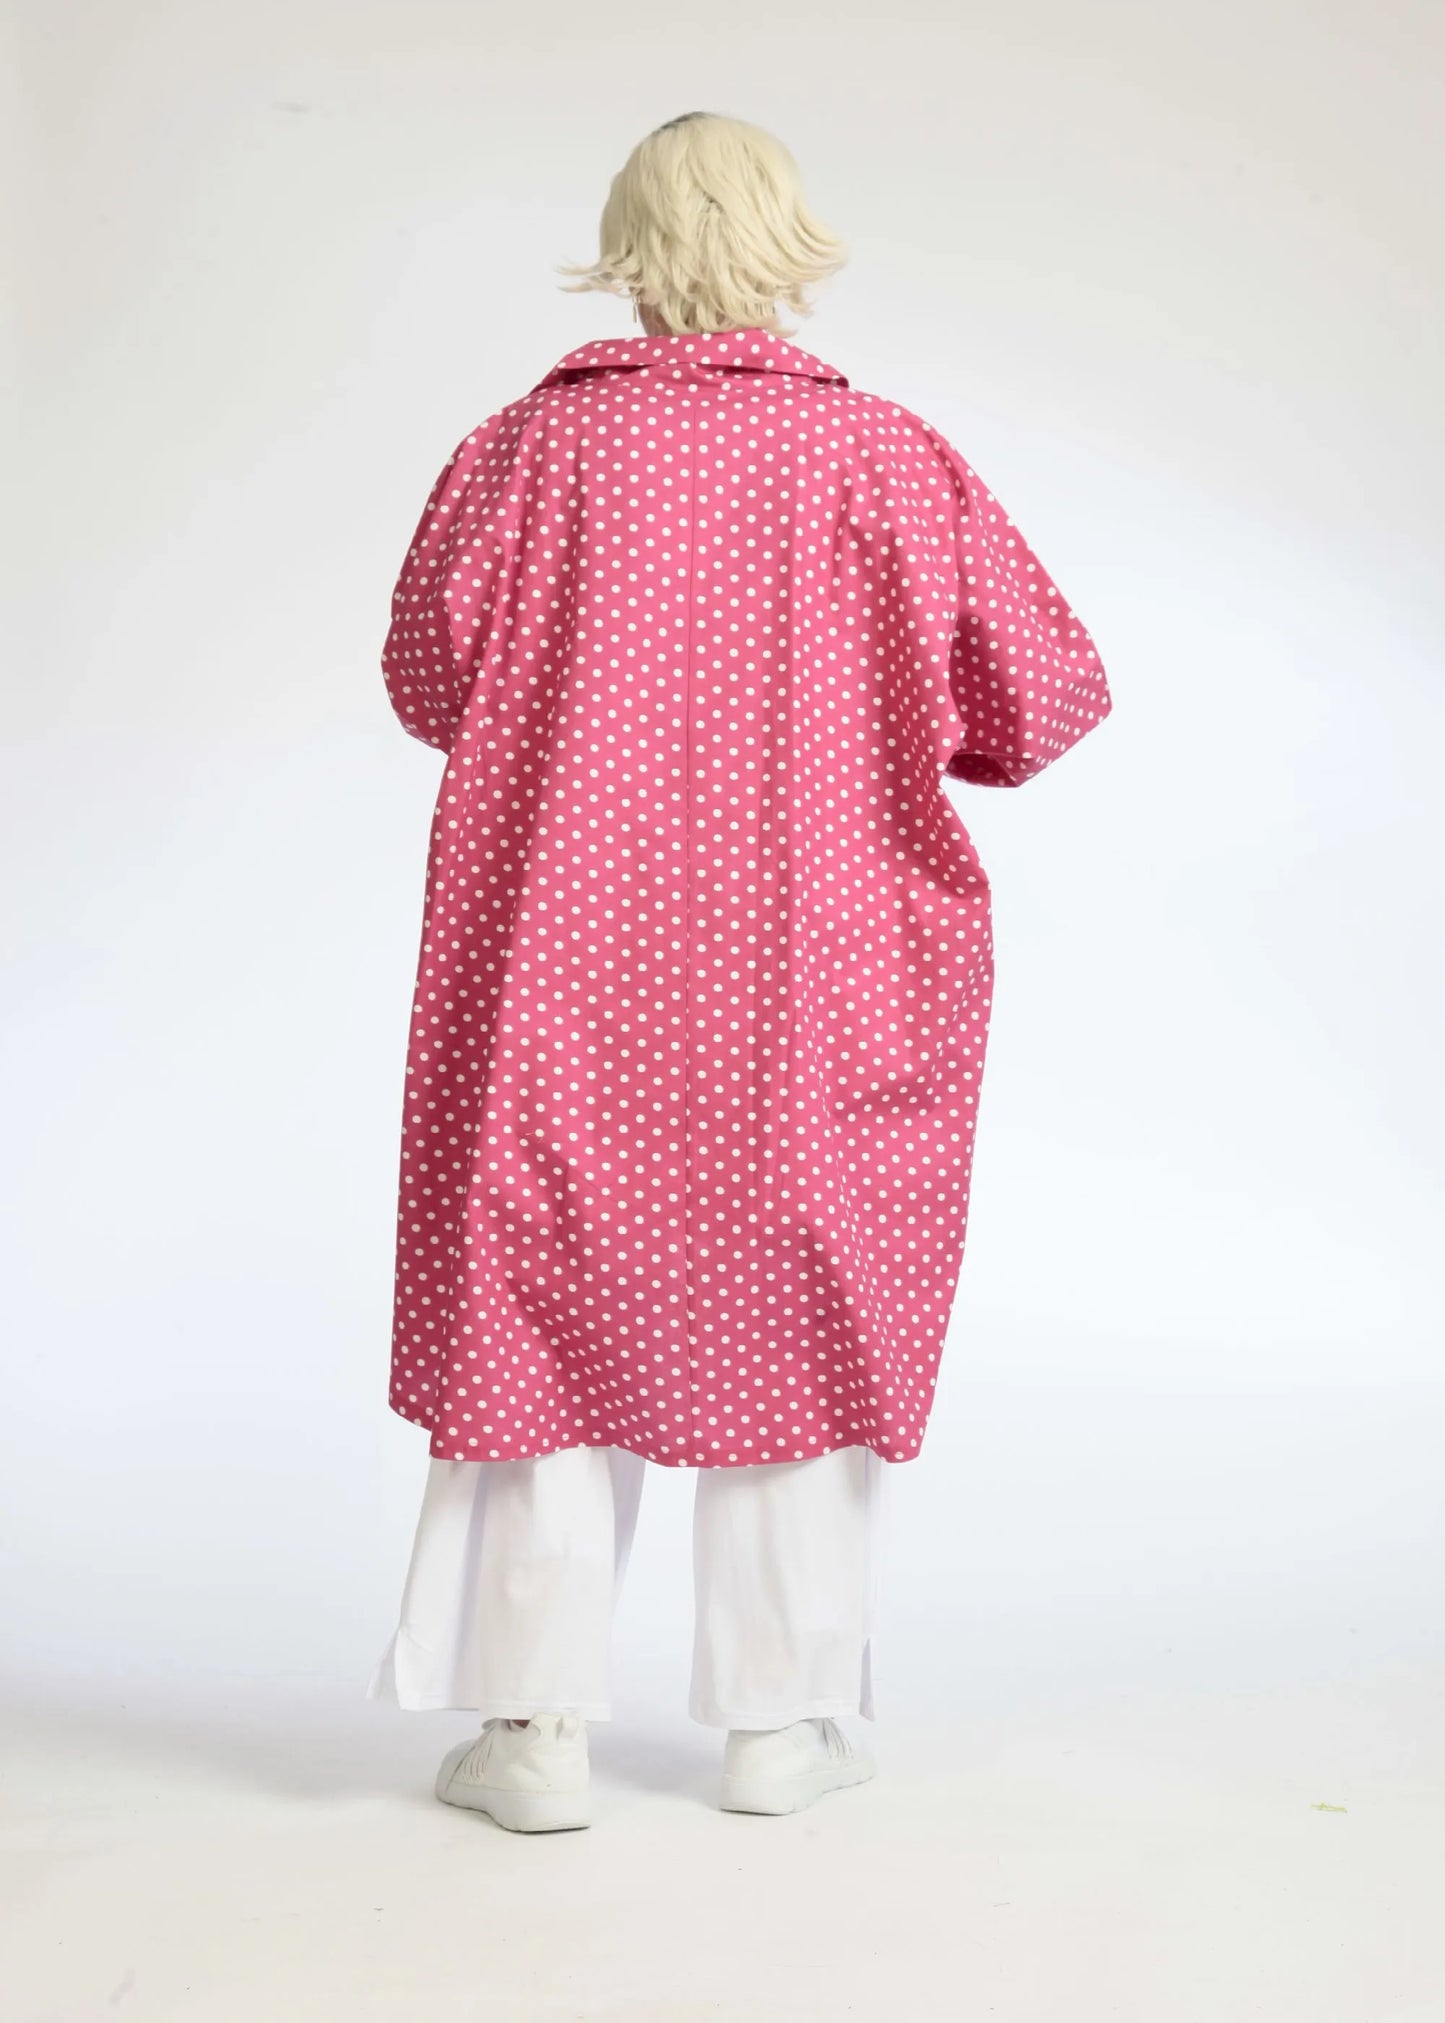 Sommer Bluse in Vokuhila Form aus glatter Popeline Qualität, Freya in Pink-Weiß